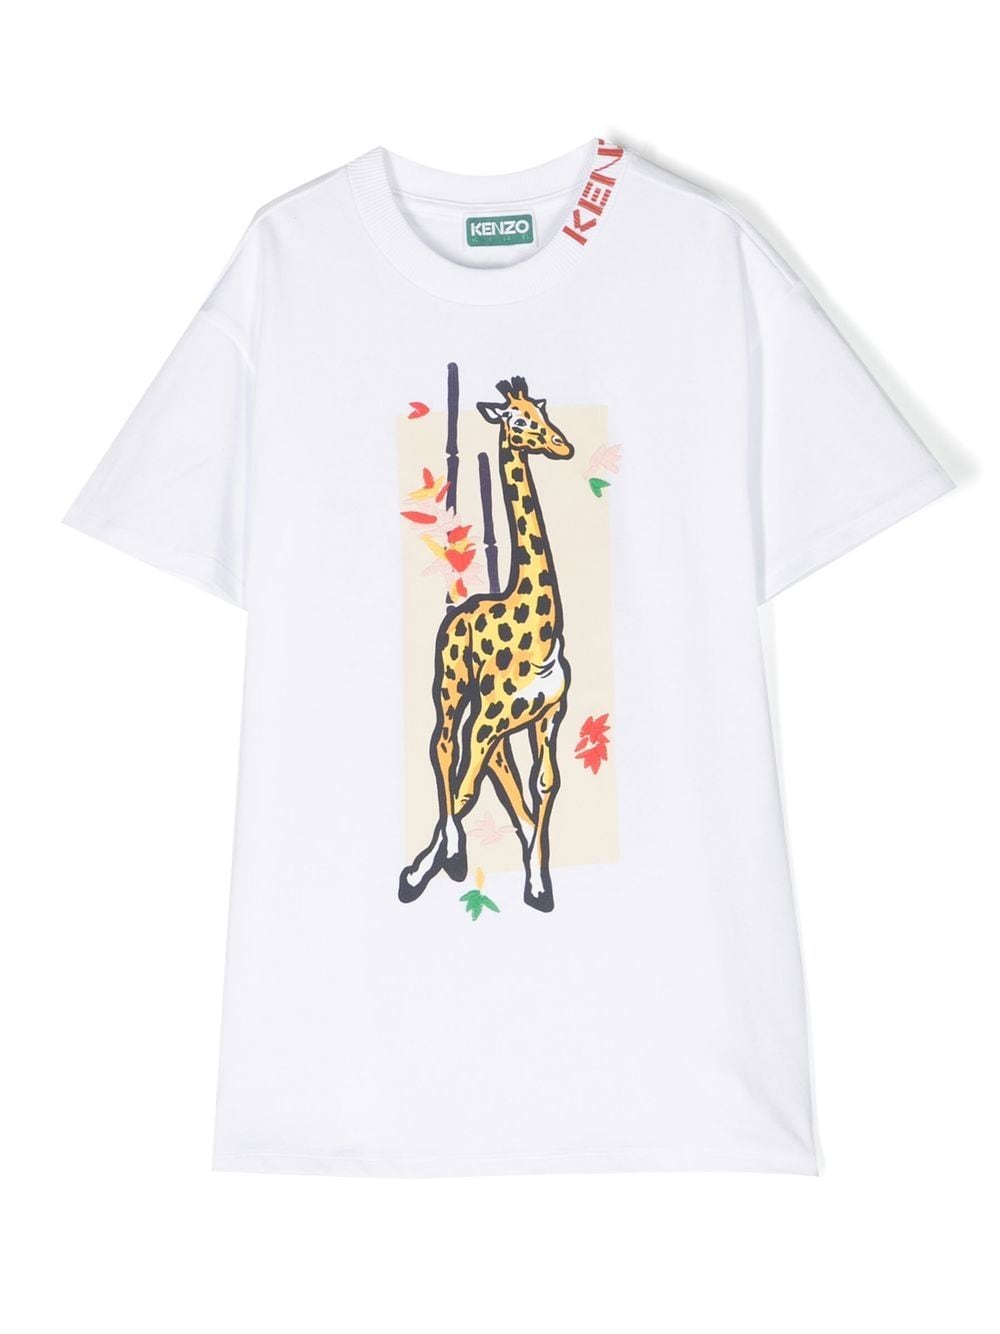 Kenzo Kids giraffe-print T-shirt dress - White von Kenzo Kids